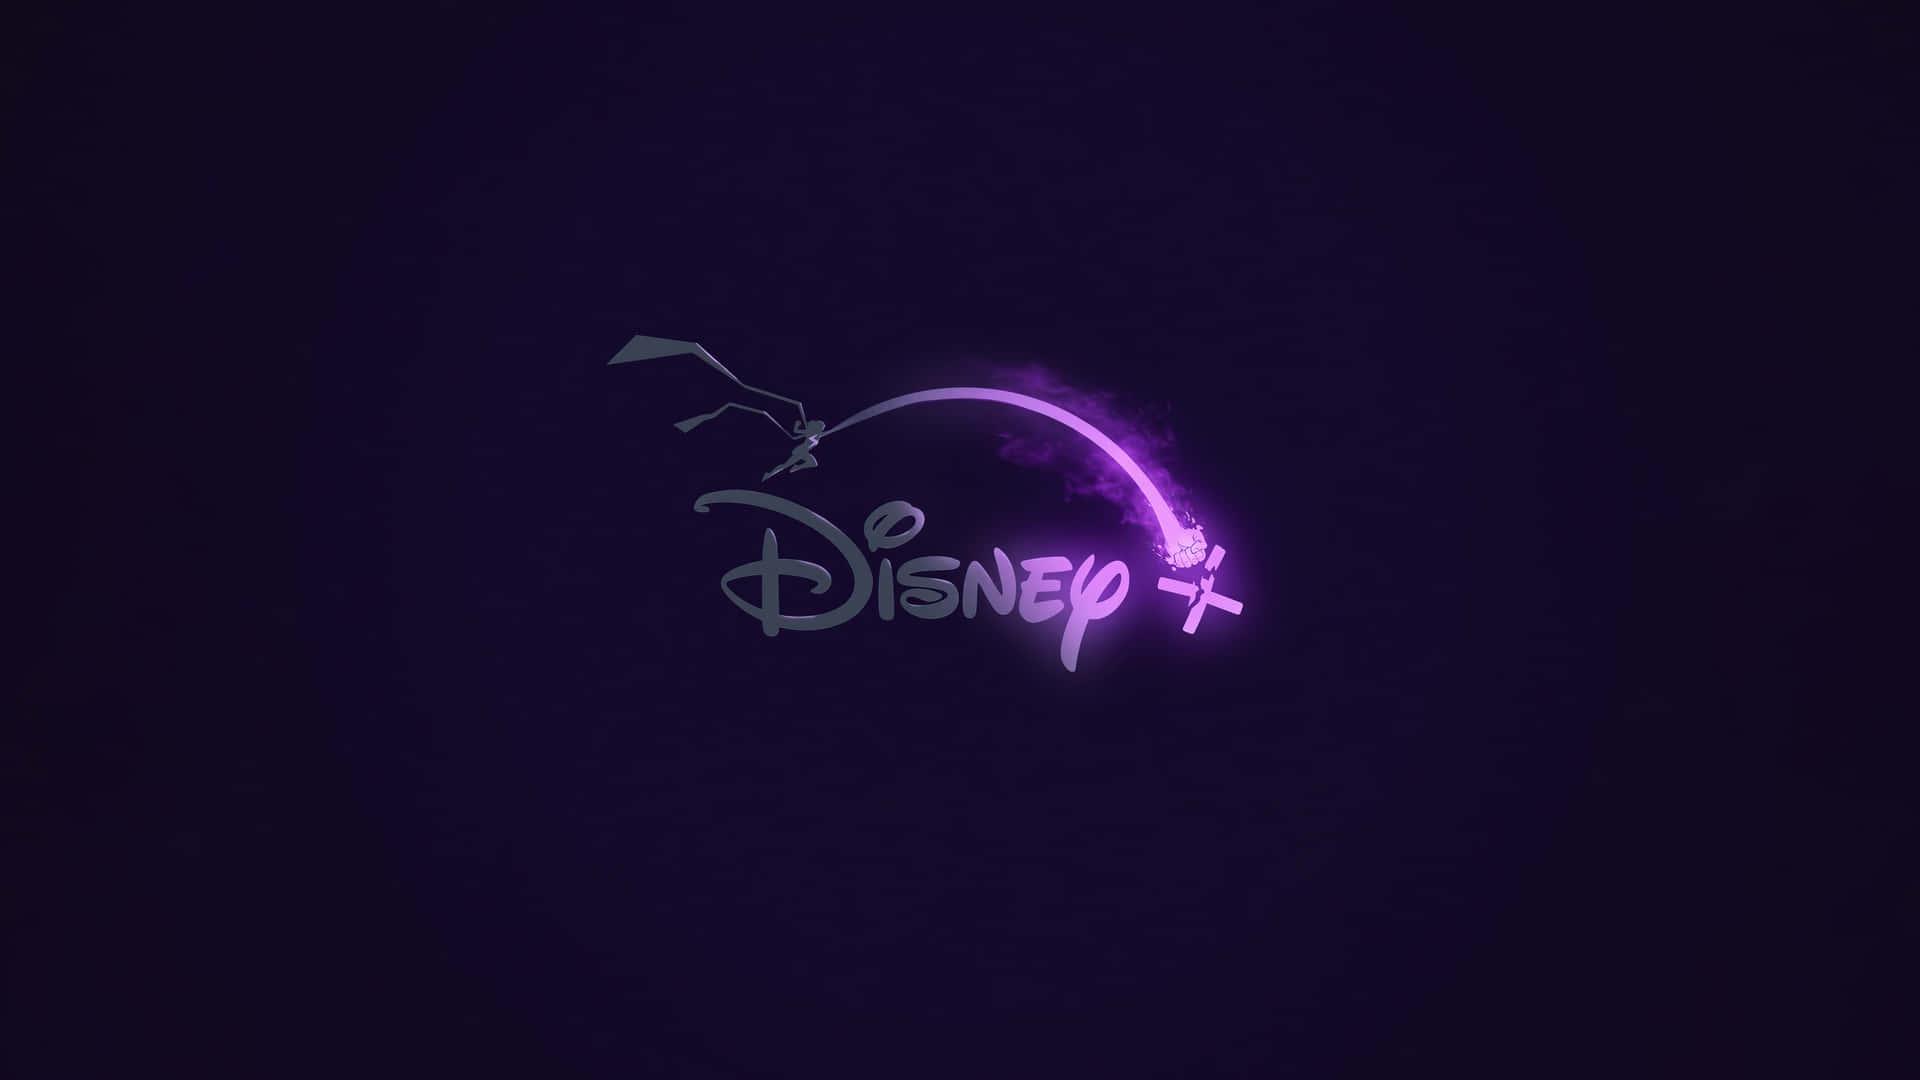 Purple Aesthetic 1440p Disney Background